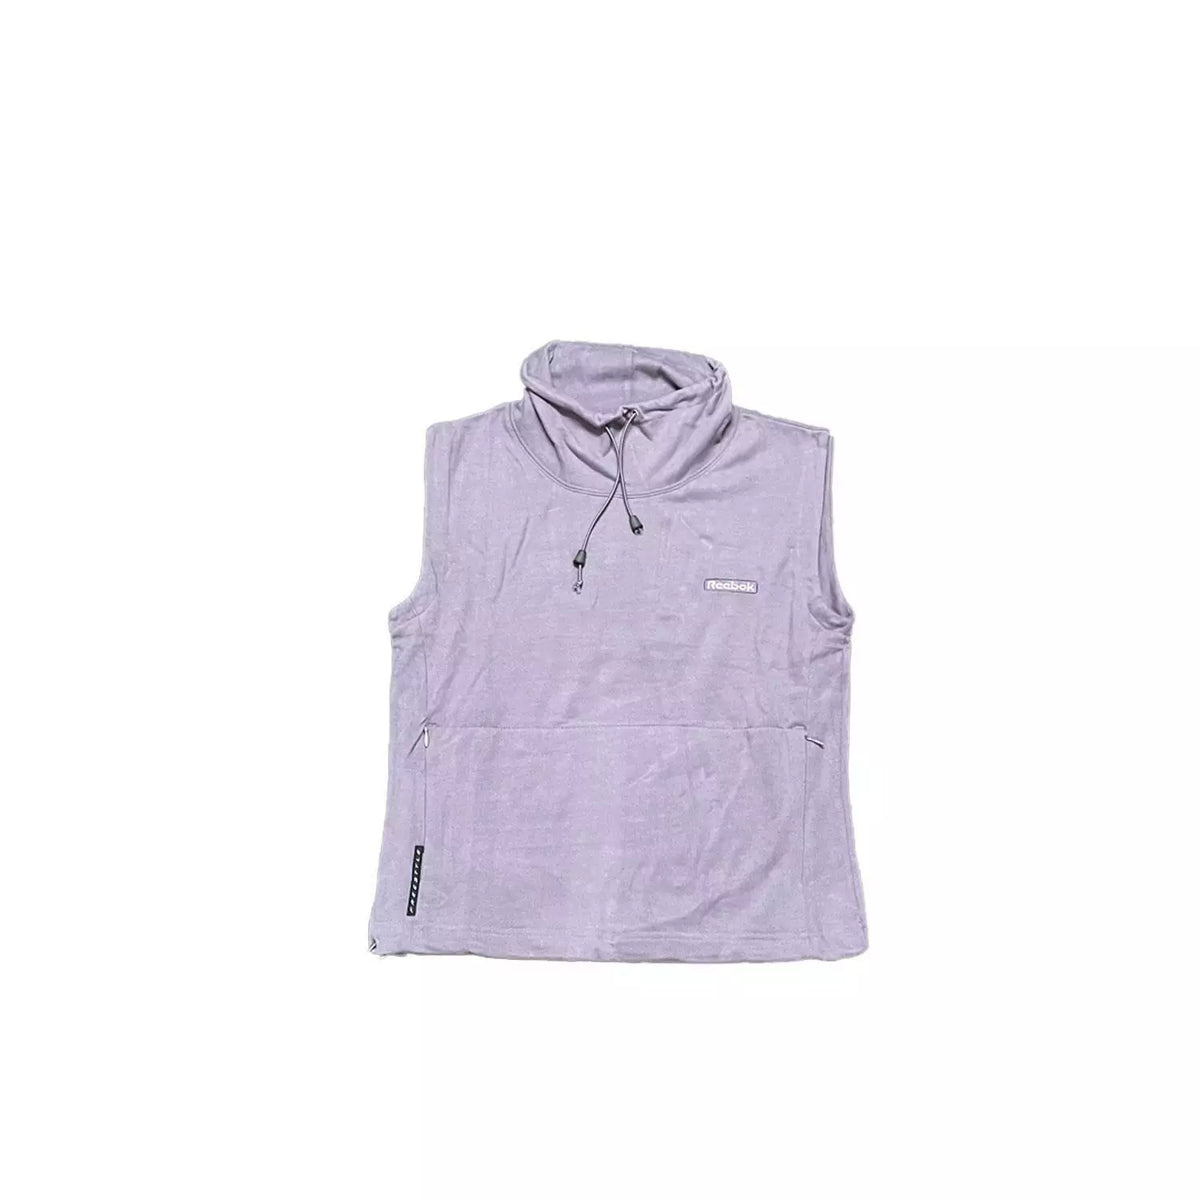 Reebok Original Women's Fleece Feel Sport Vest - Purple - Size 12